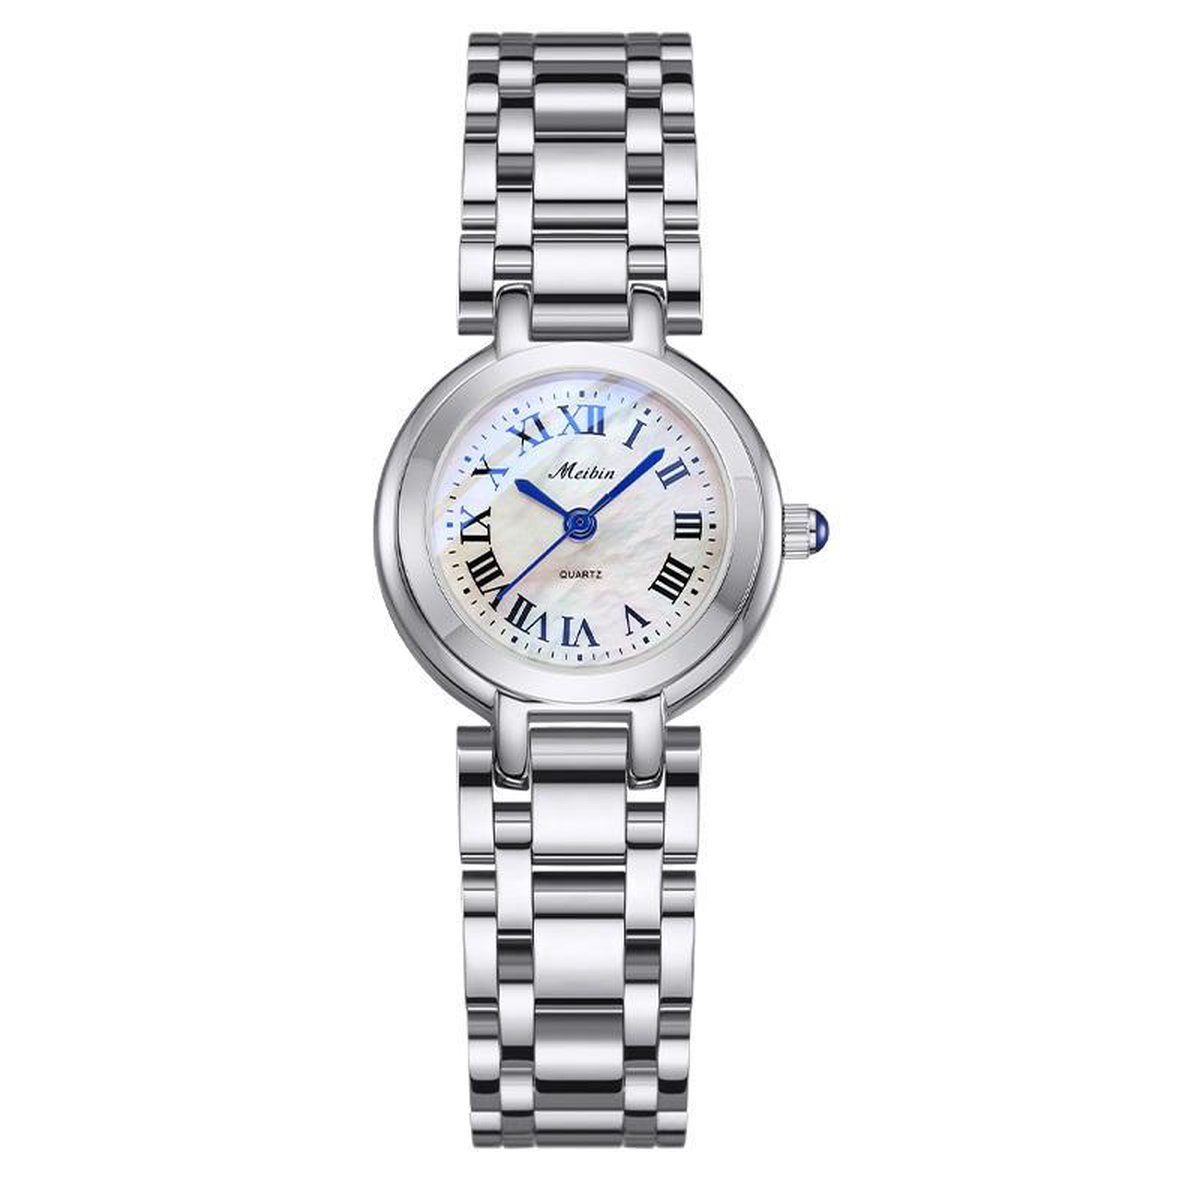 Longbo - Meibin - Dames Horloge - Zilver/Wit- Ø 27mm (Productvideo)